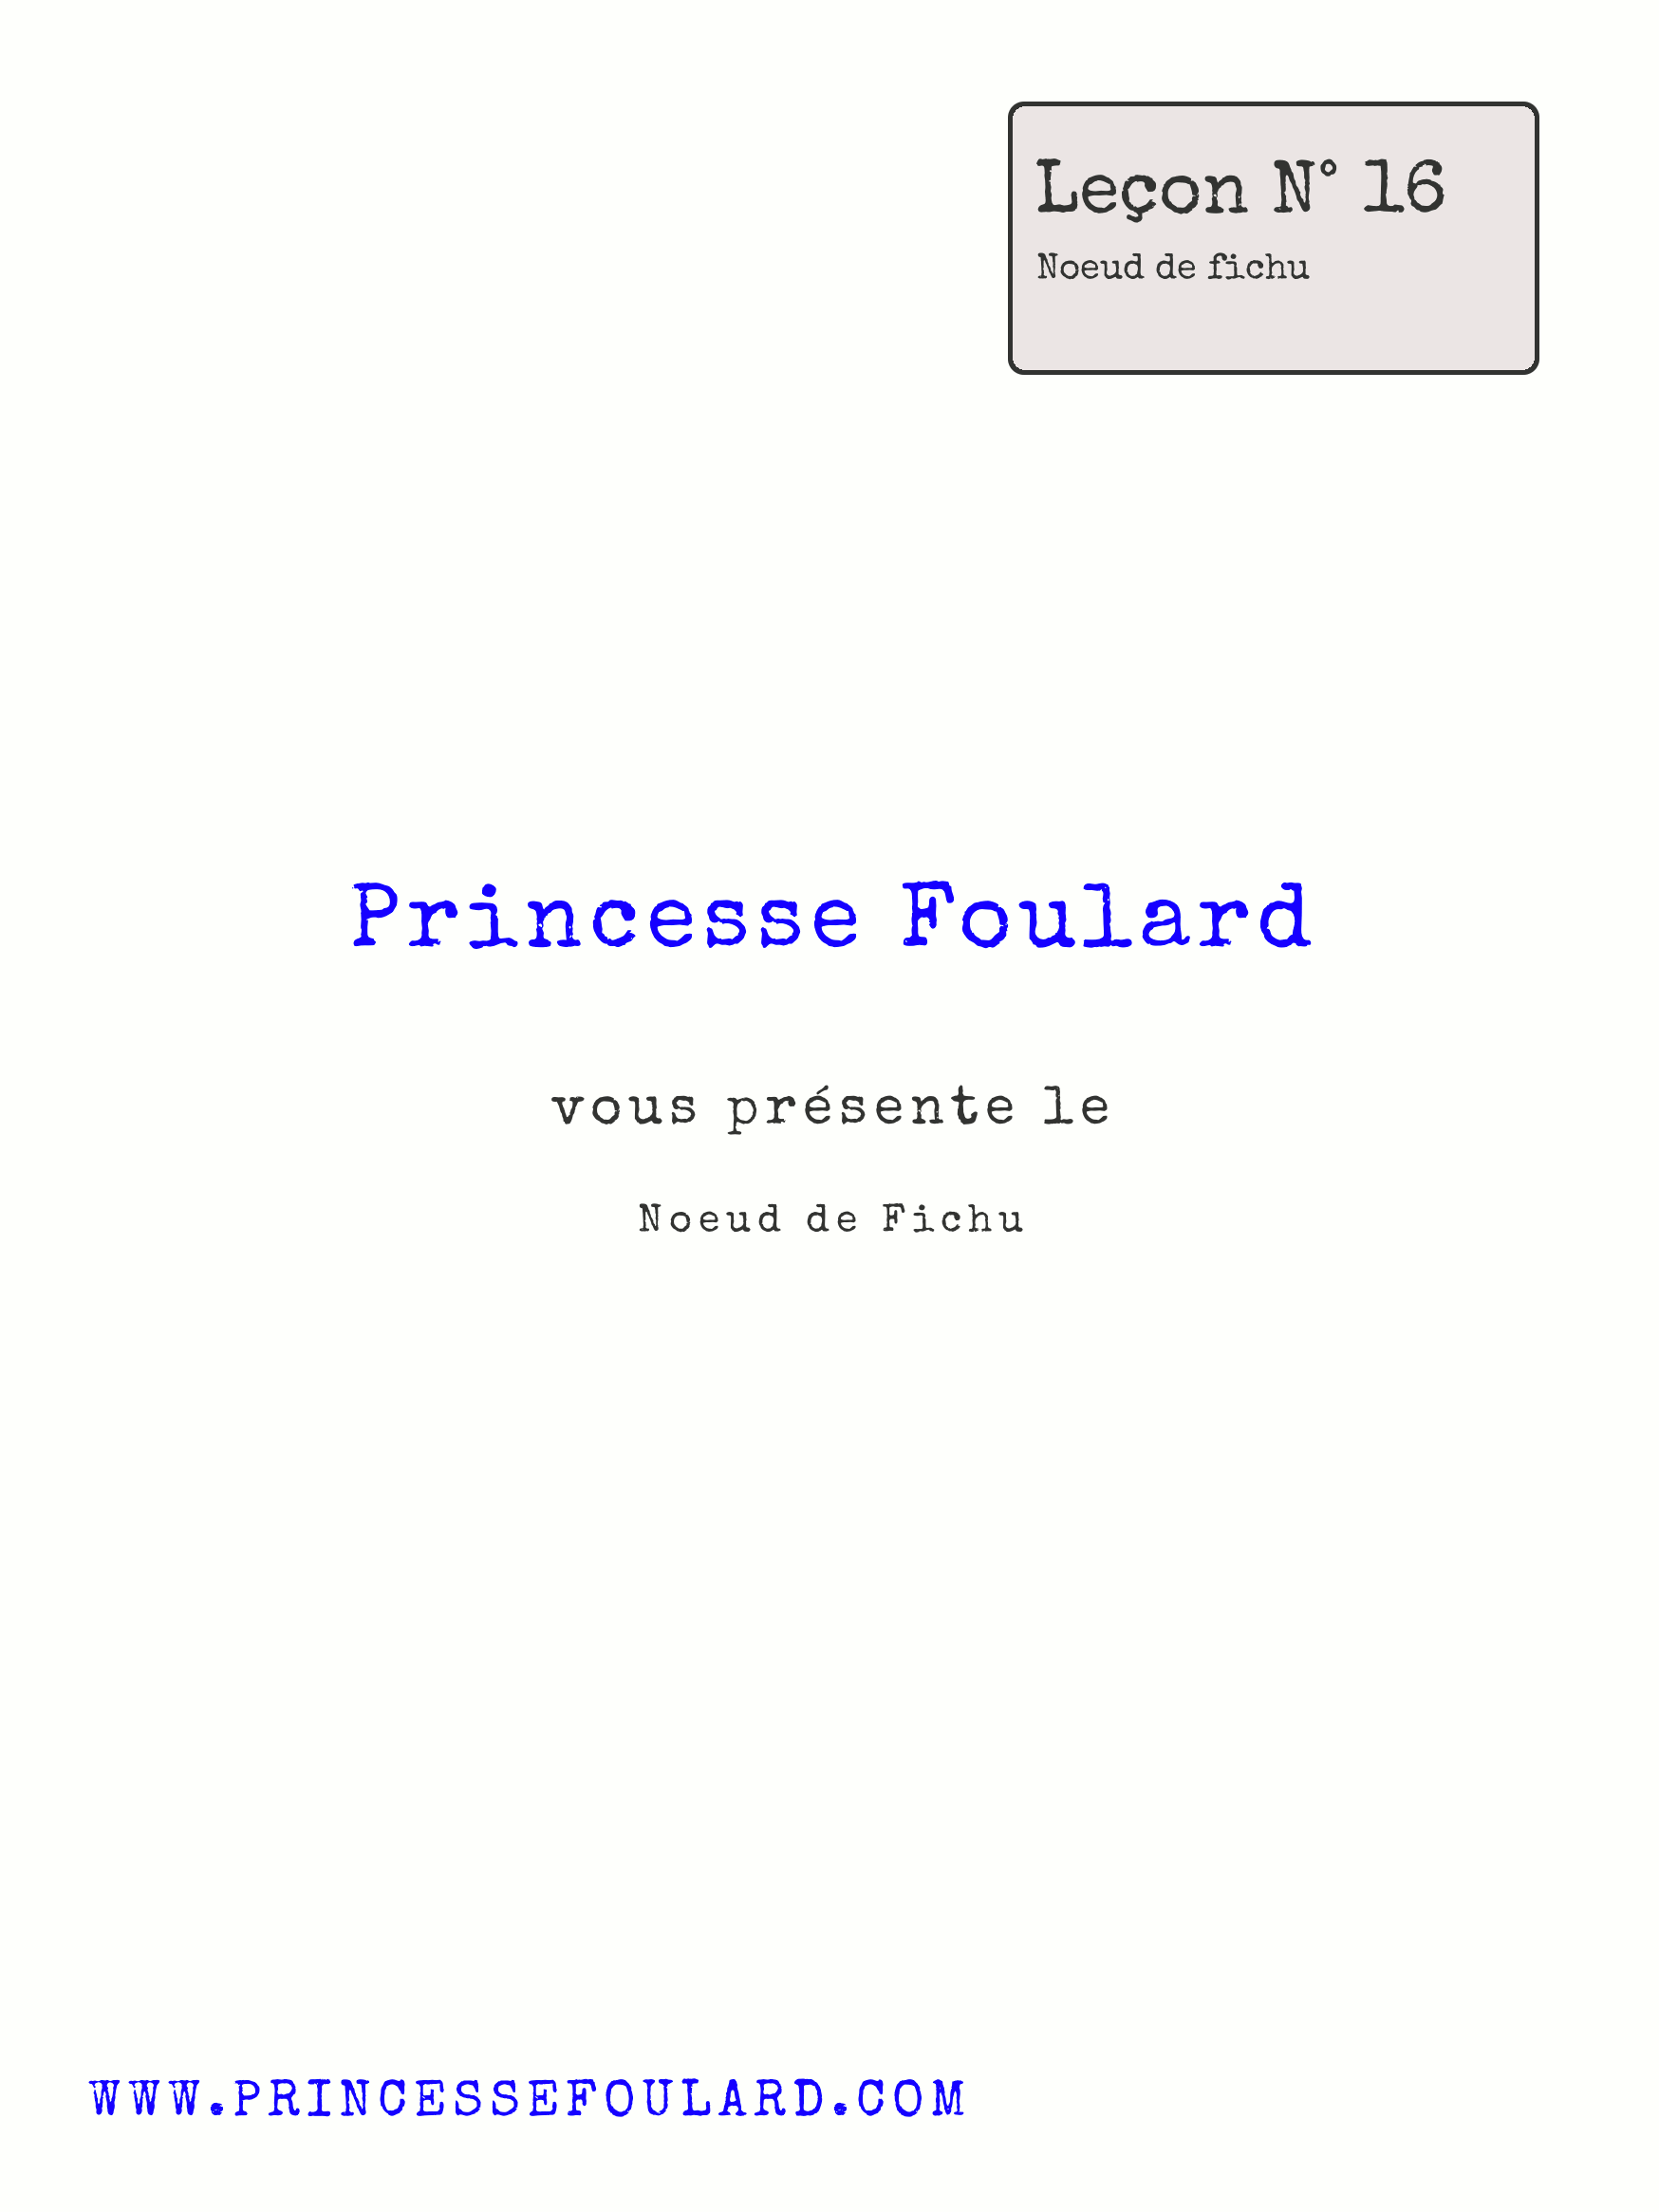 Tuto Noeud de Foulard en anneau par "Princesse Foulard"